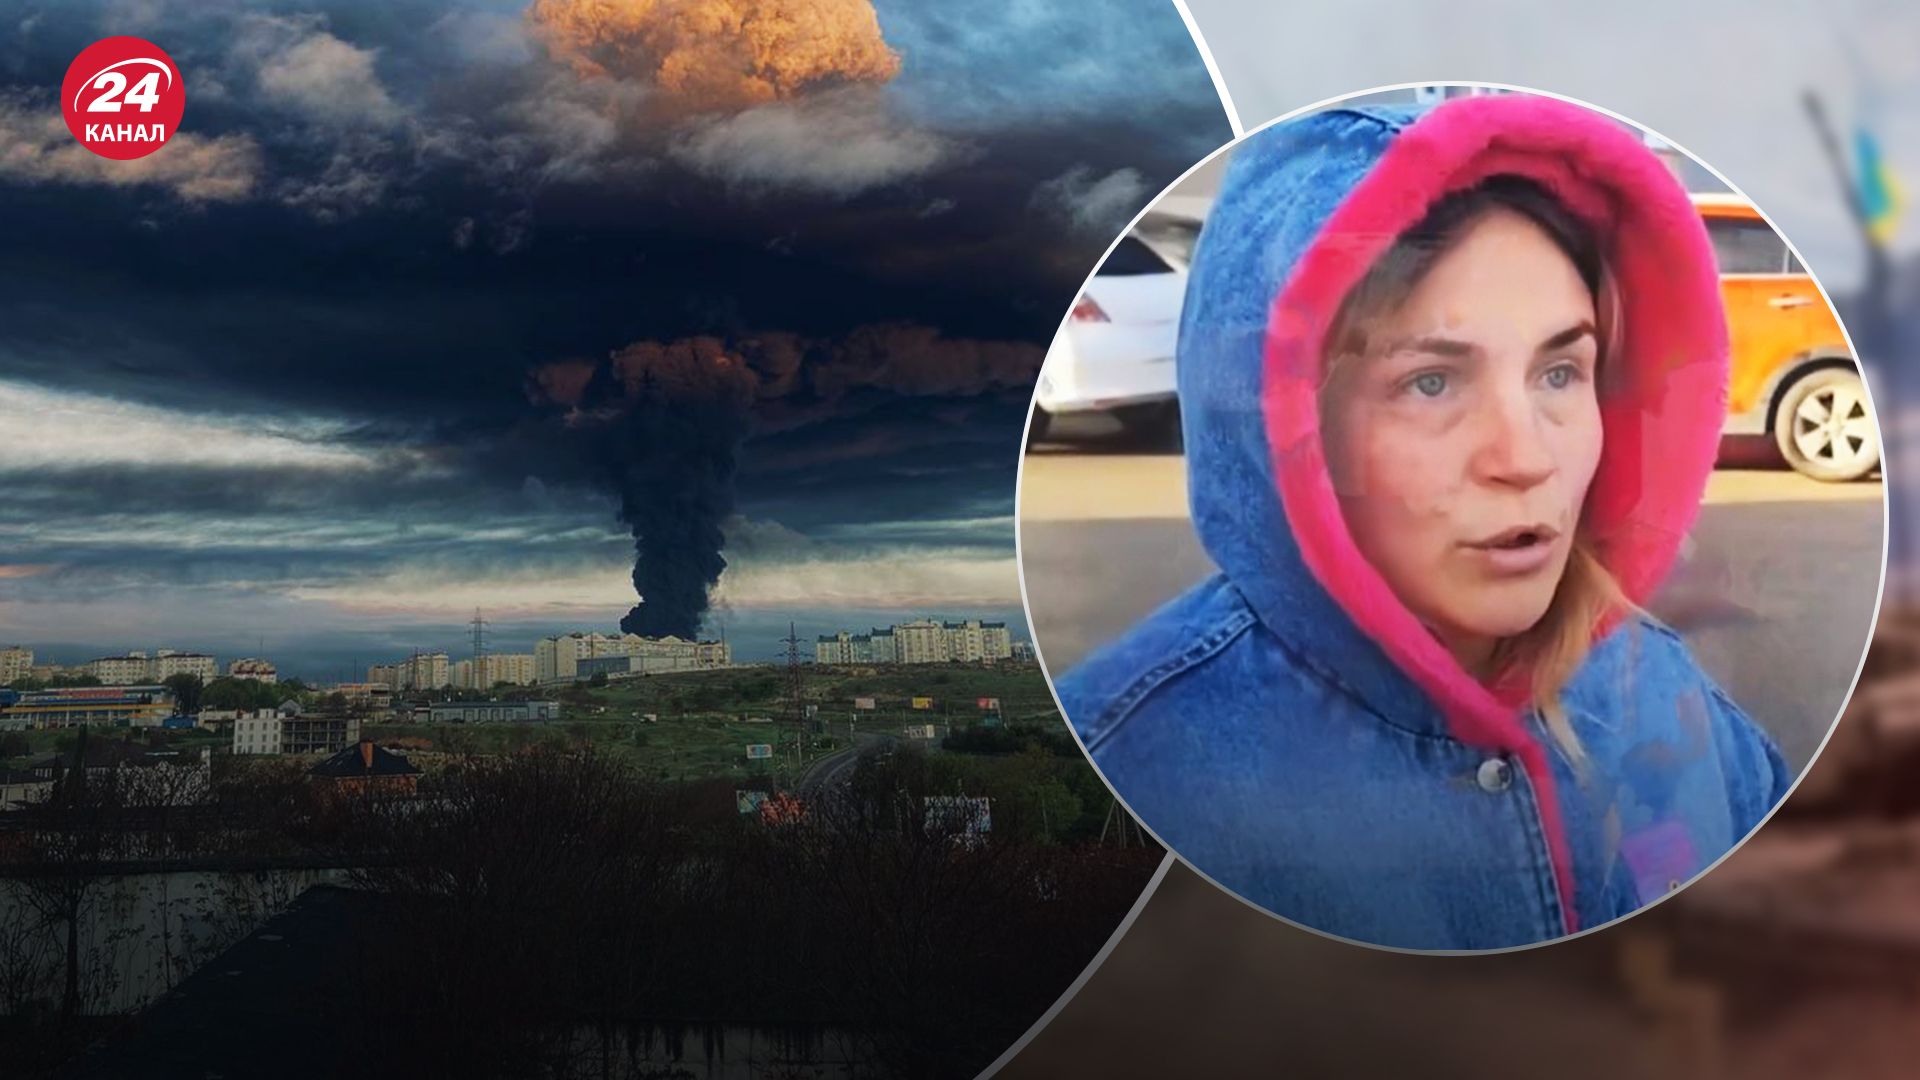 Был сильный взрыв и задрожали окна, – жительница рассказала об "ужасе" в Севастополе - 24 Канал